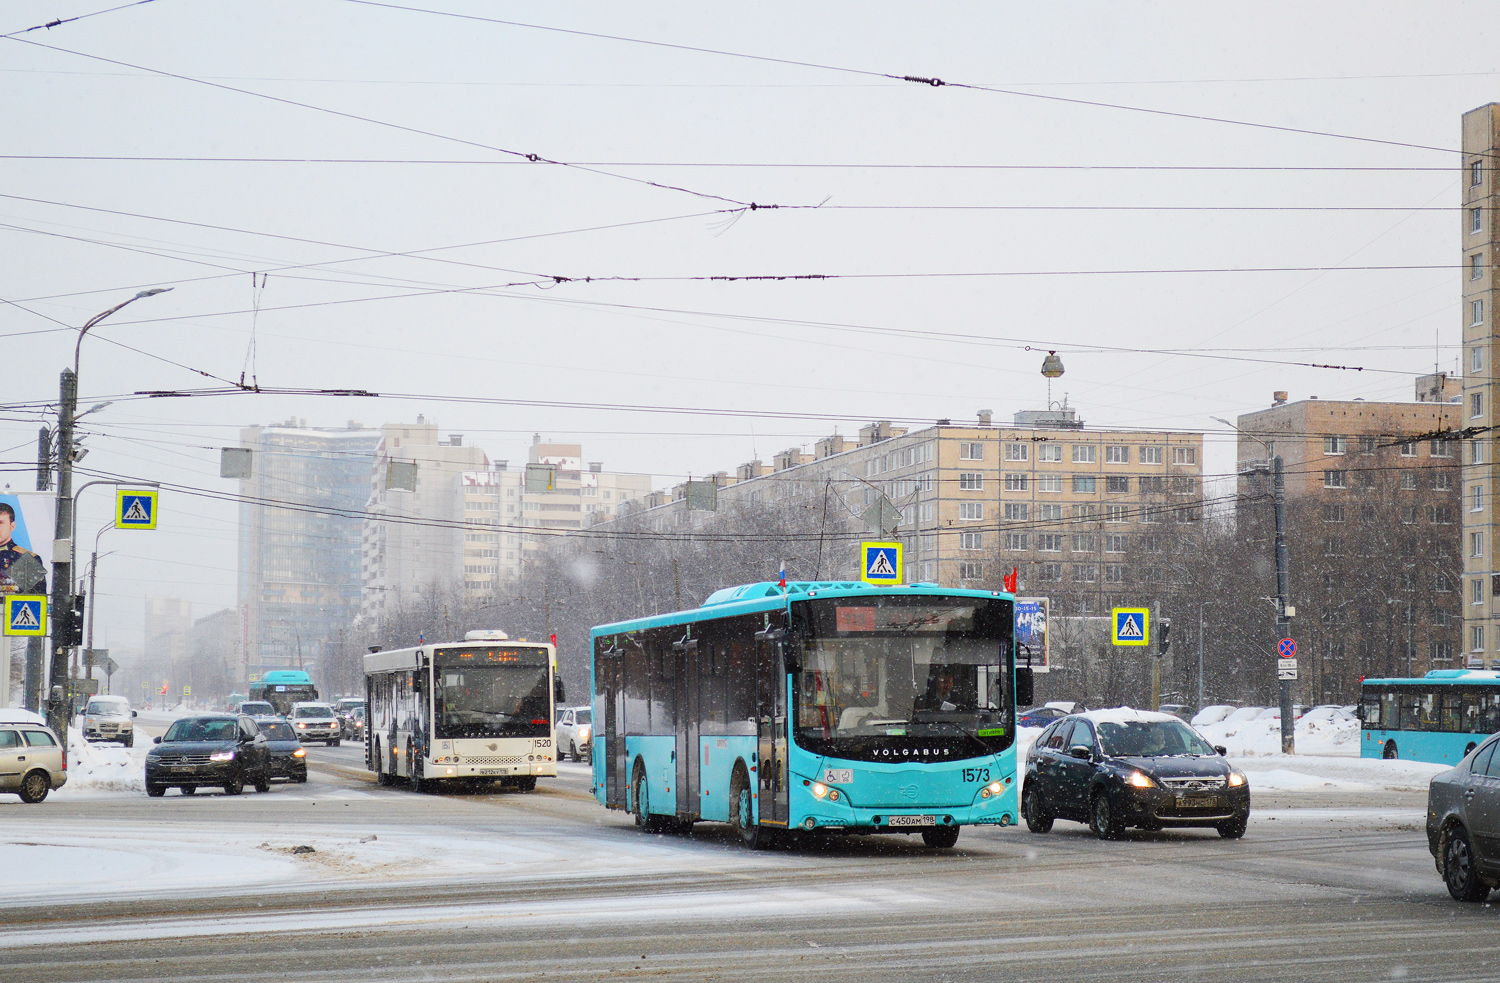 Saint Petersburg, Volgabus-5270.02 # 1573